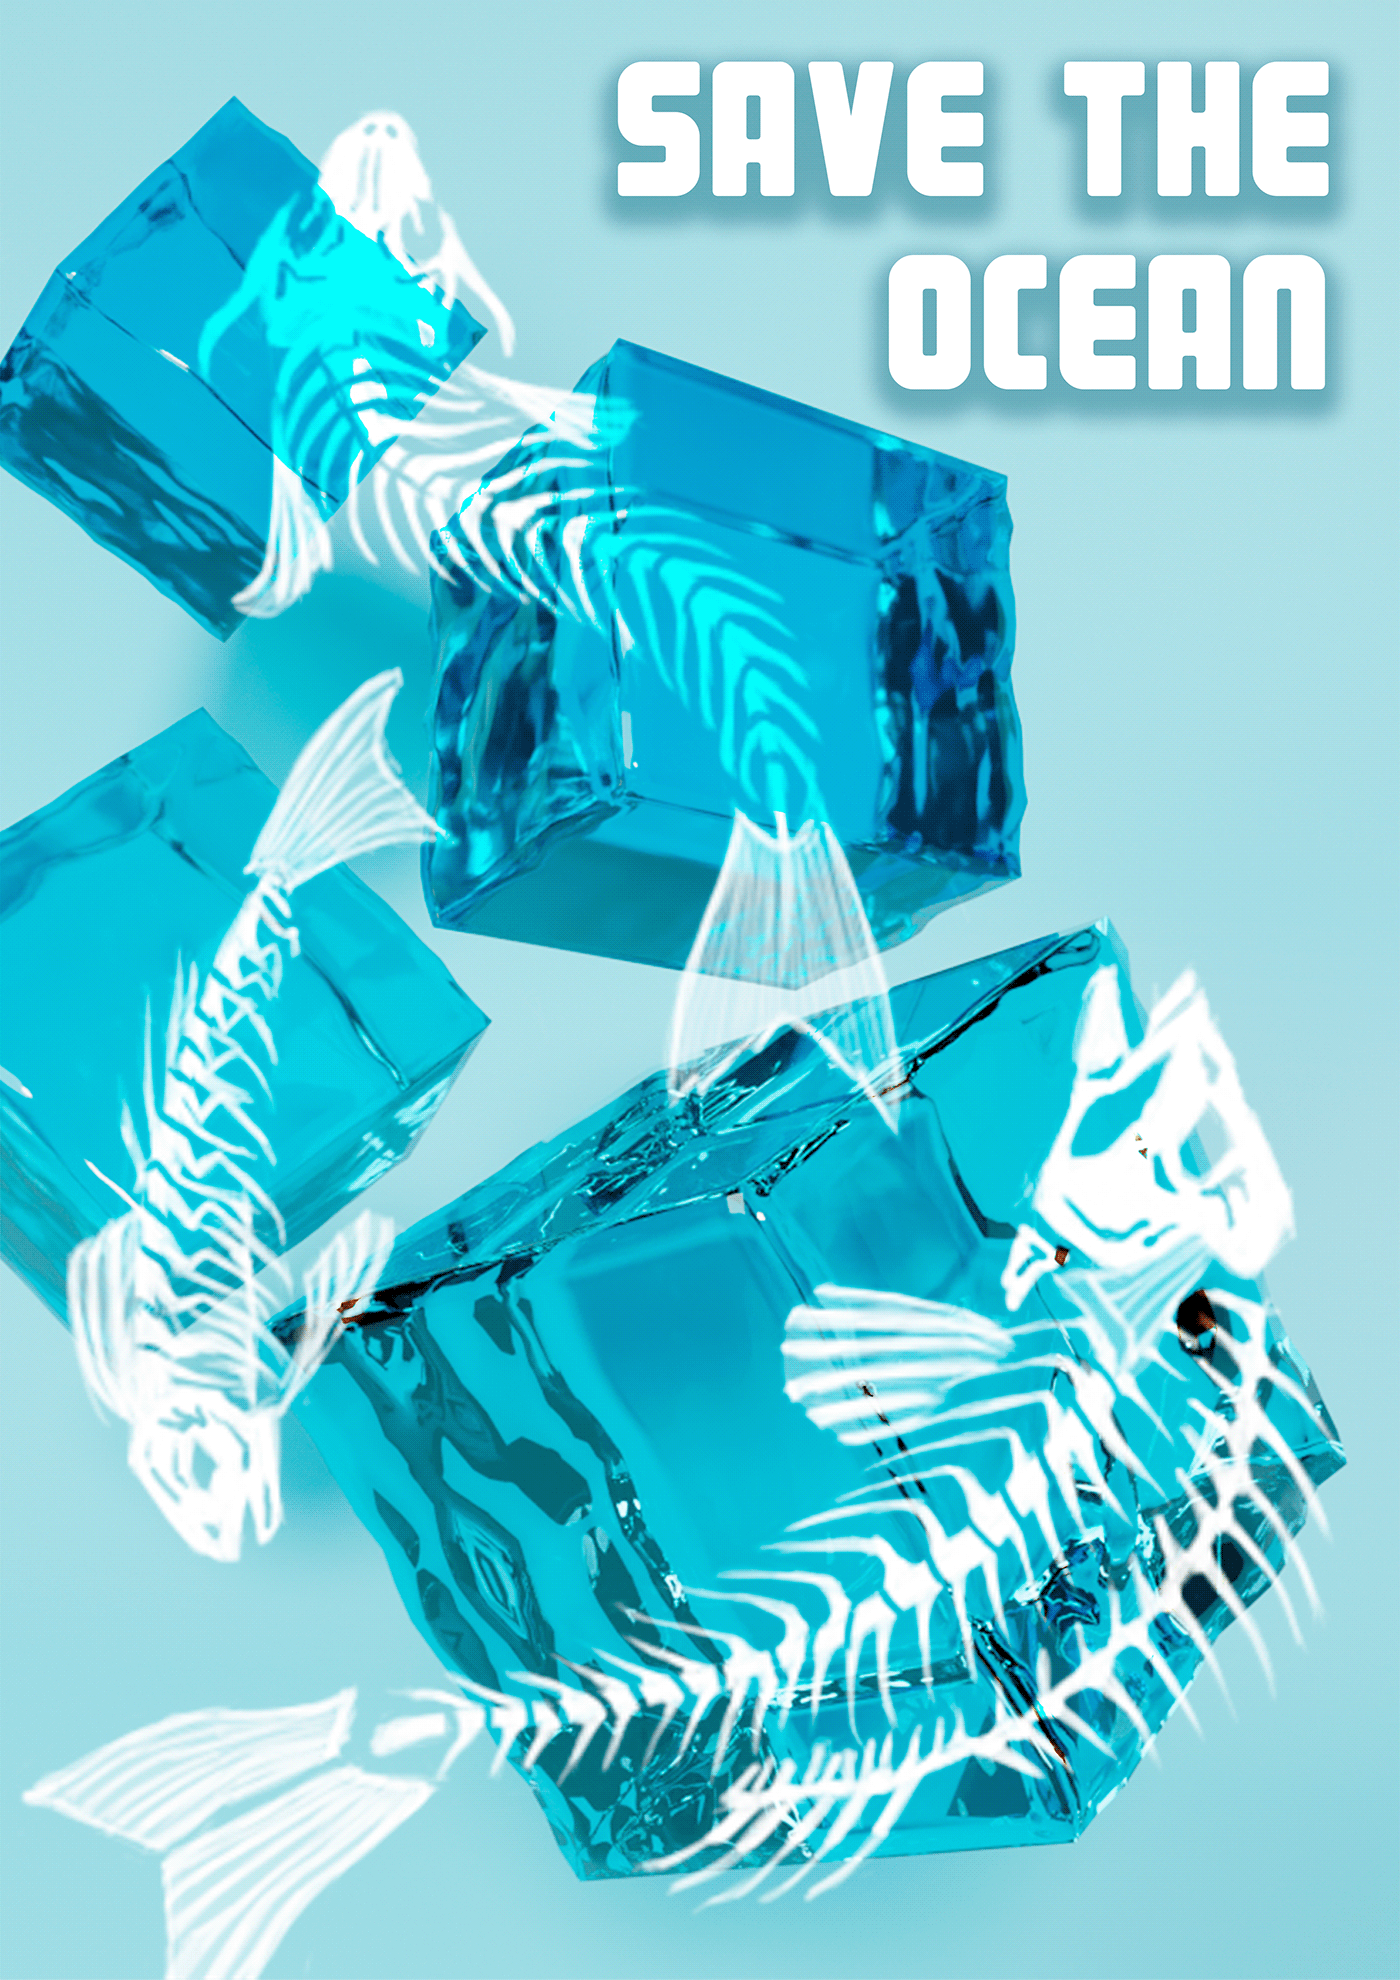 плакат графический дизайн постер дизайн полиграфия